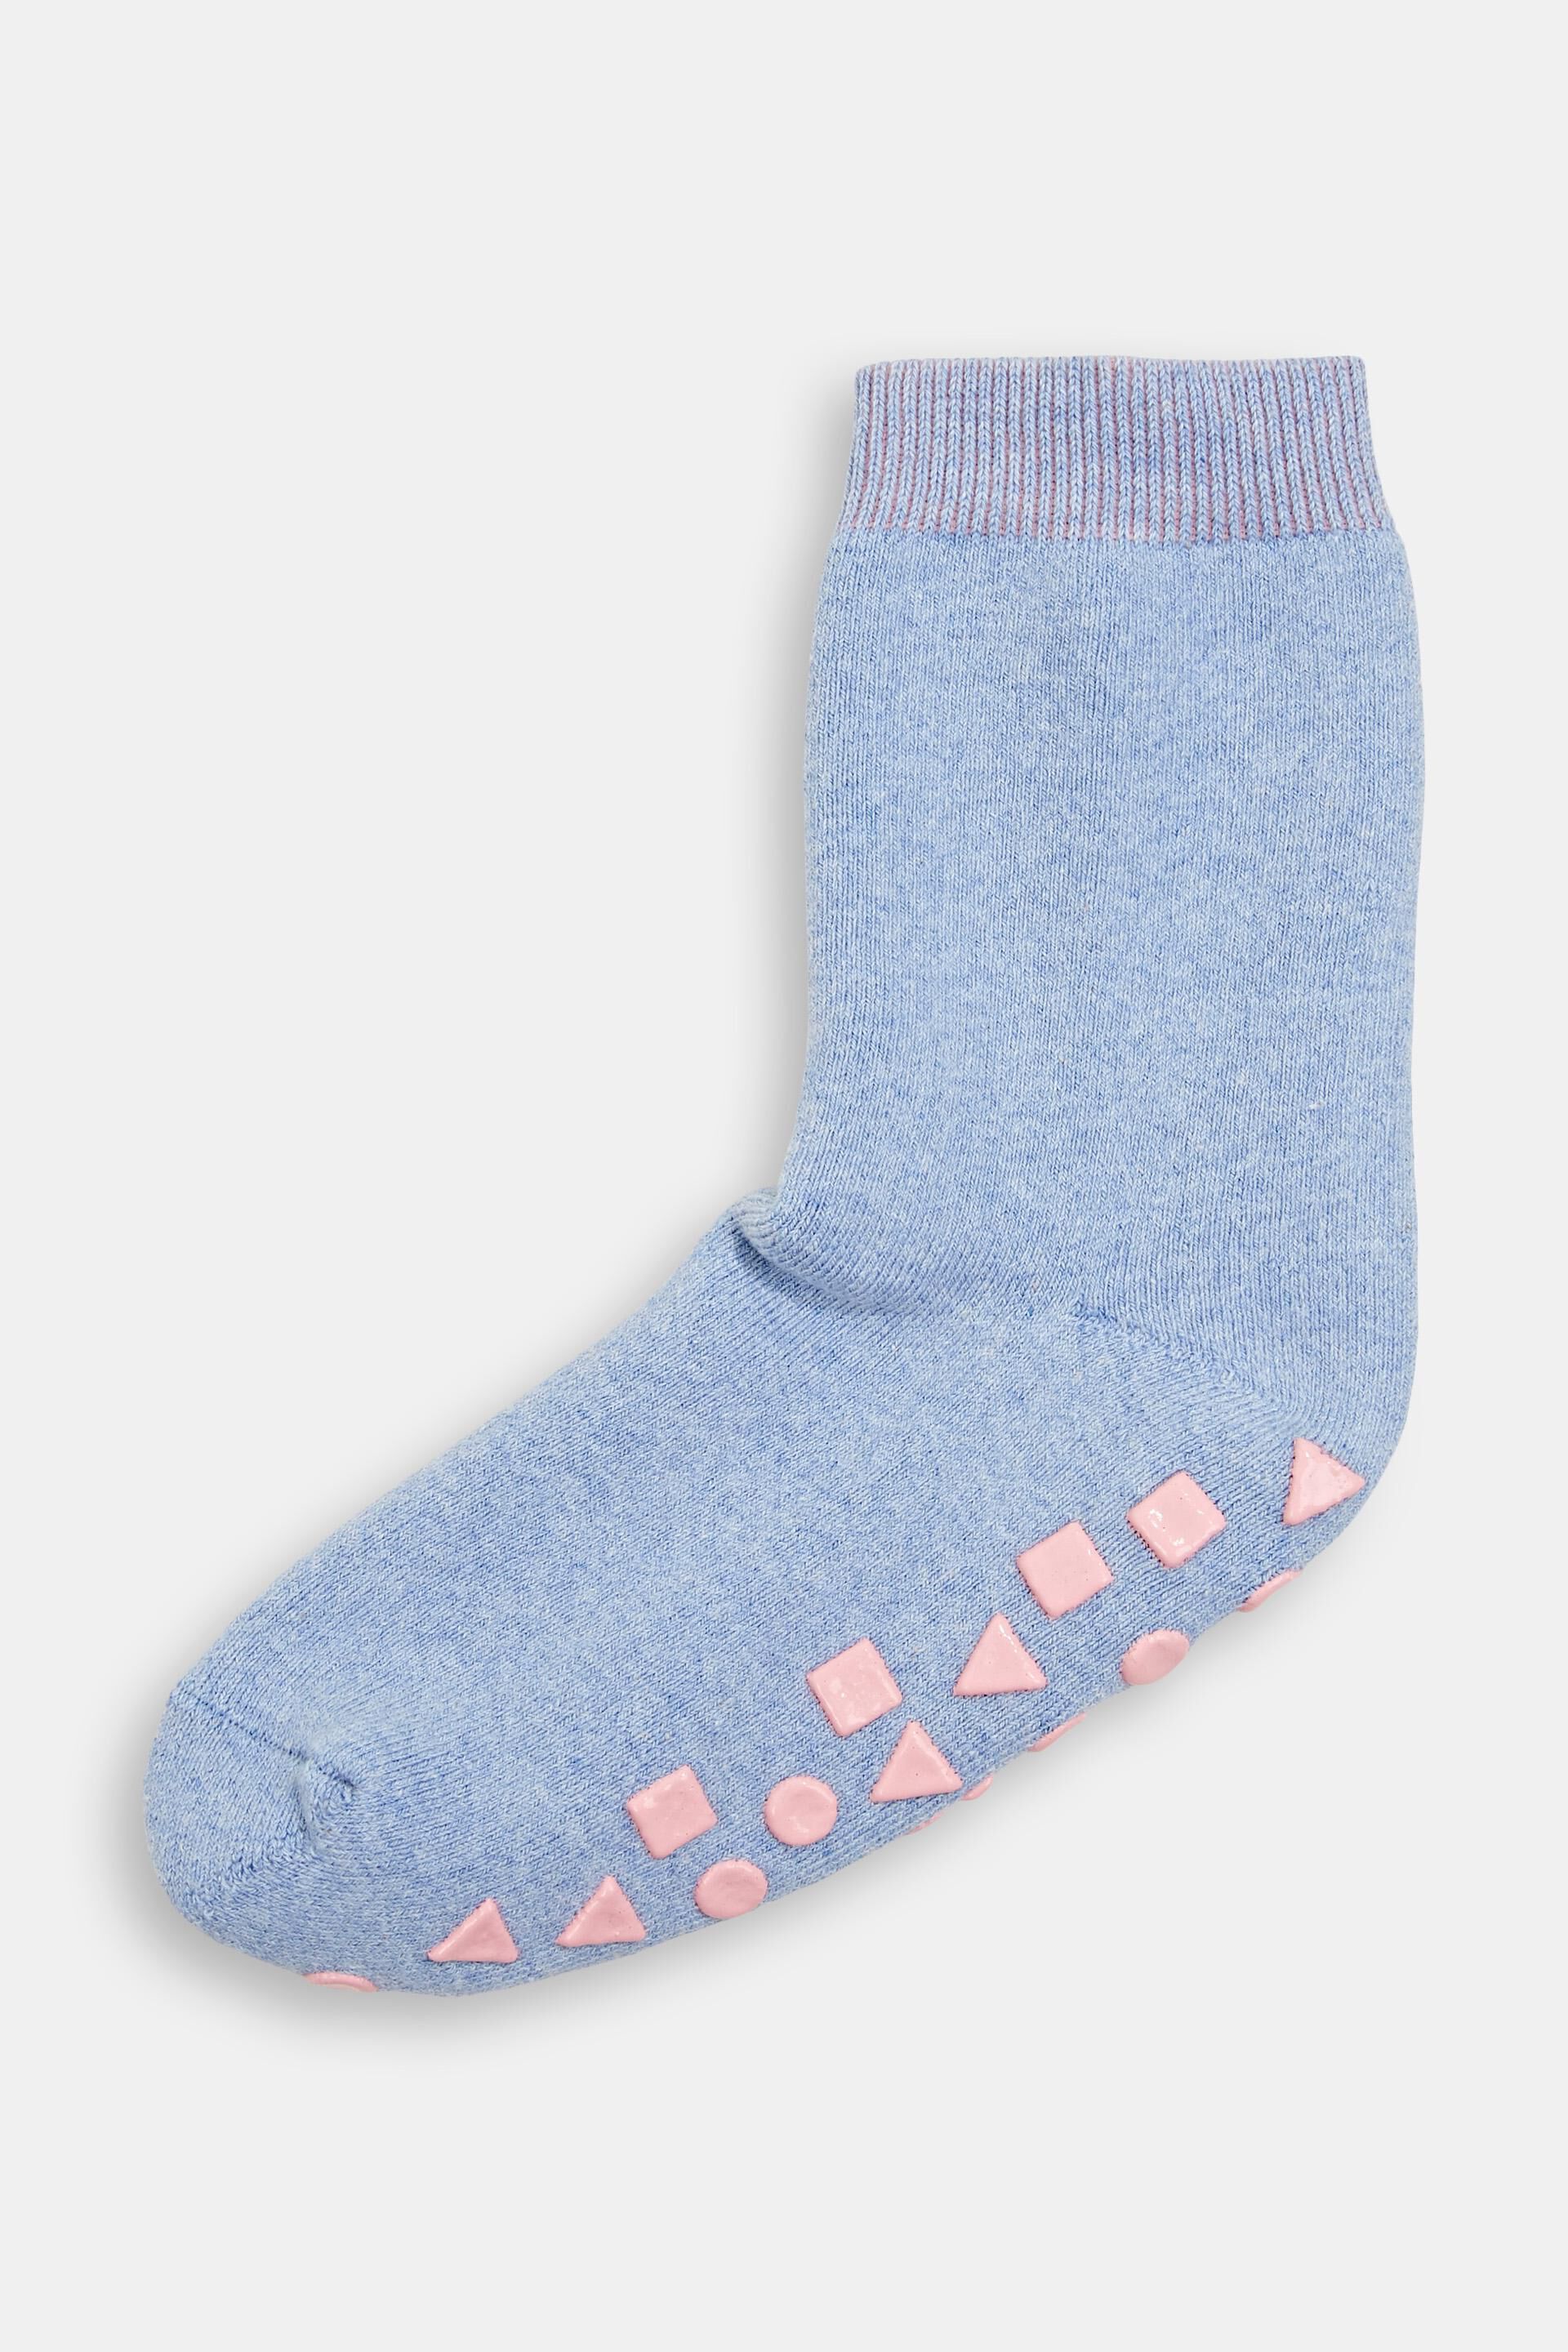 Esprit blended of made Non-slip socks cotton organic